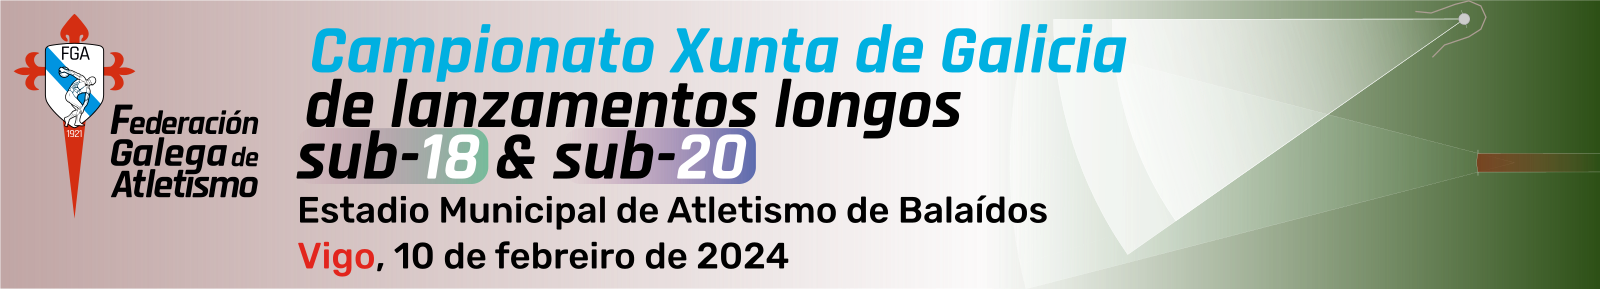  VIII Campionato Xunta de Galicia de.  Estadio Municipal de Atletismo de Balaídos, 10 febreiro 2024